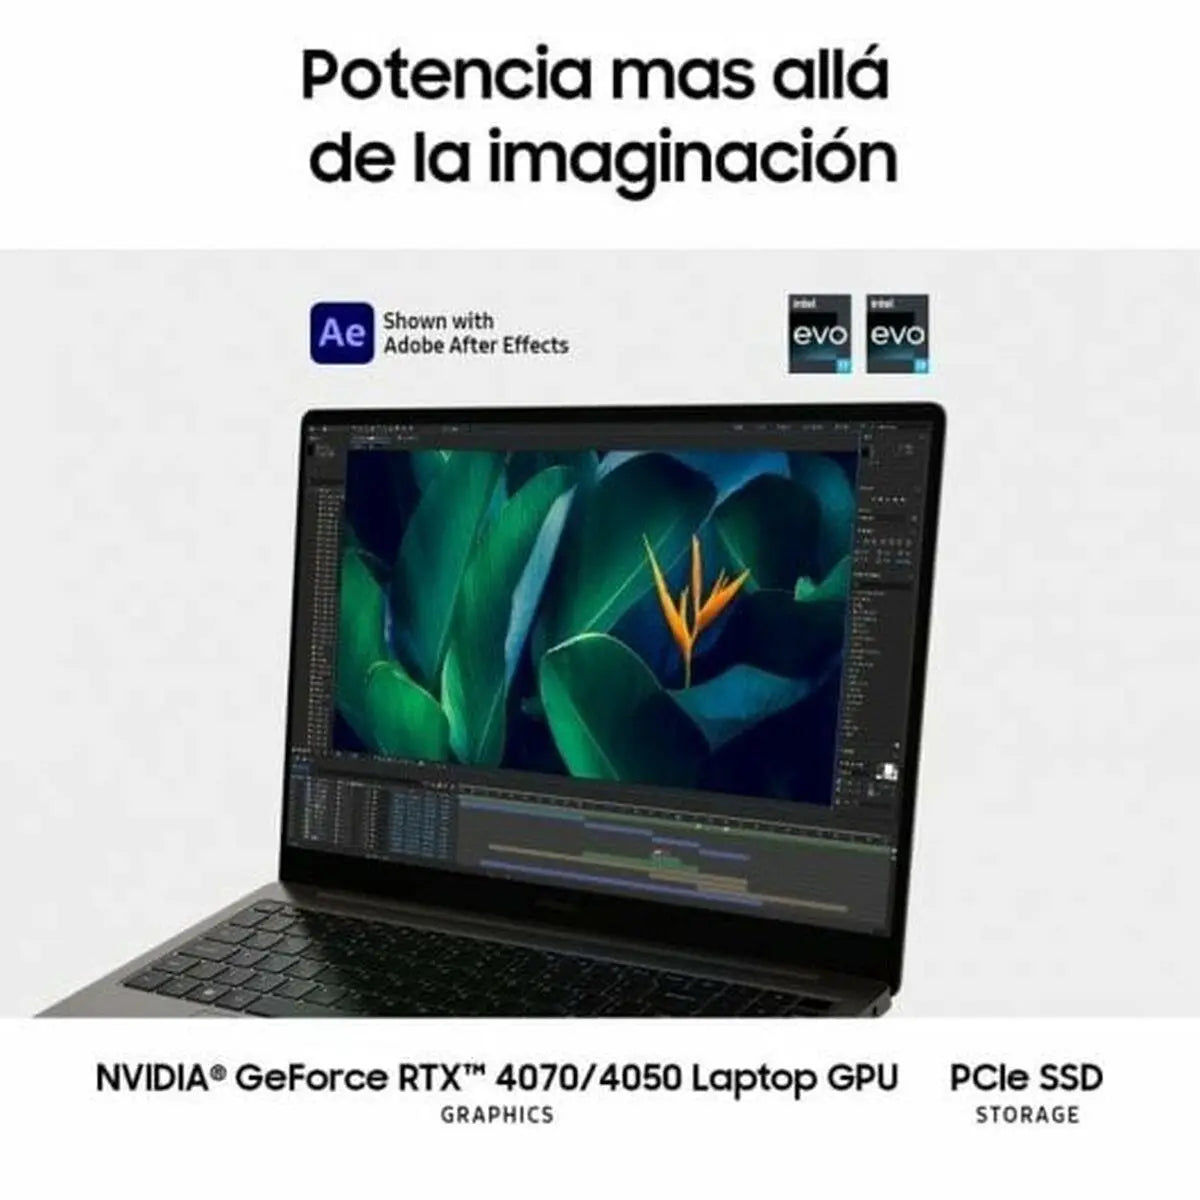 Laptop Samsung Galaxy Book3 Ultra 16" Intel Core i9-13900H 32 GB RAM 1 TB SSD Nvidia Geforce RTX 4070 - IGSI Europe Ltd